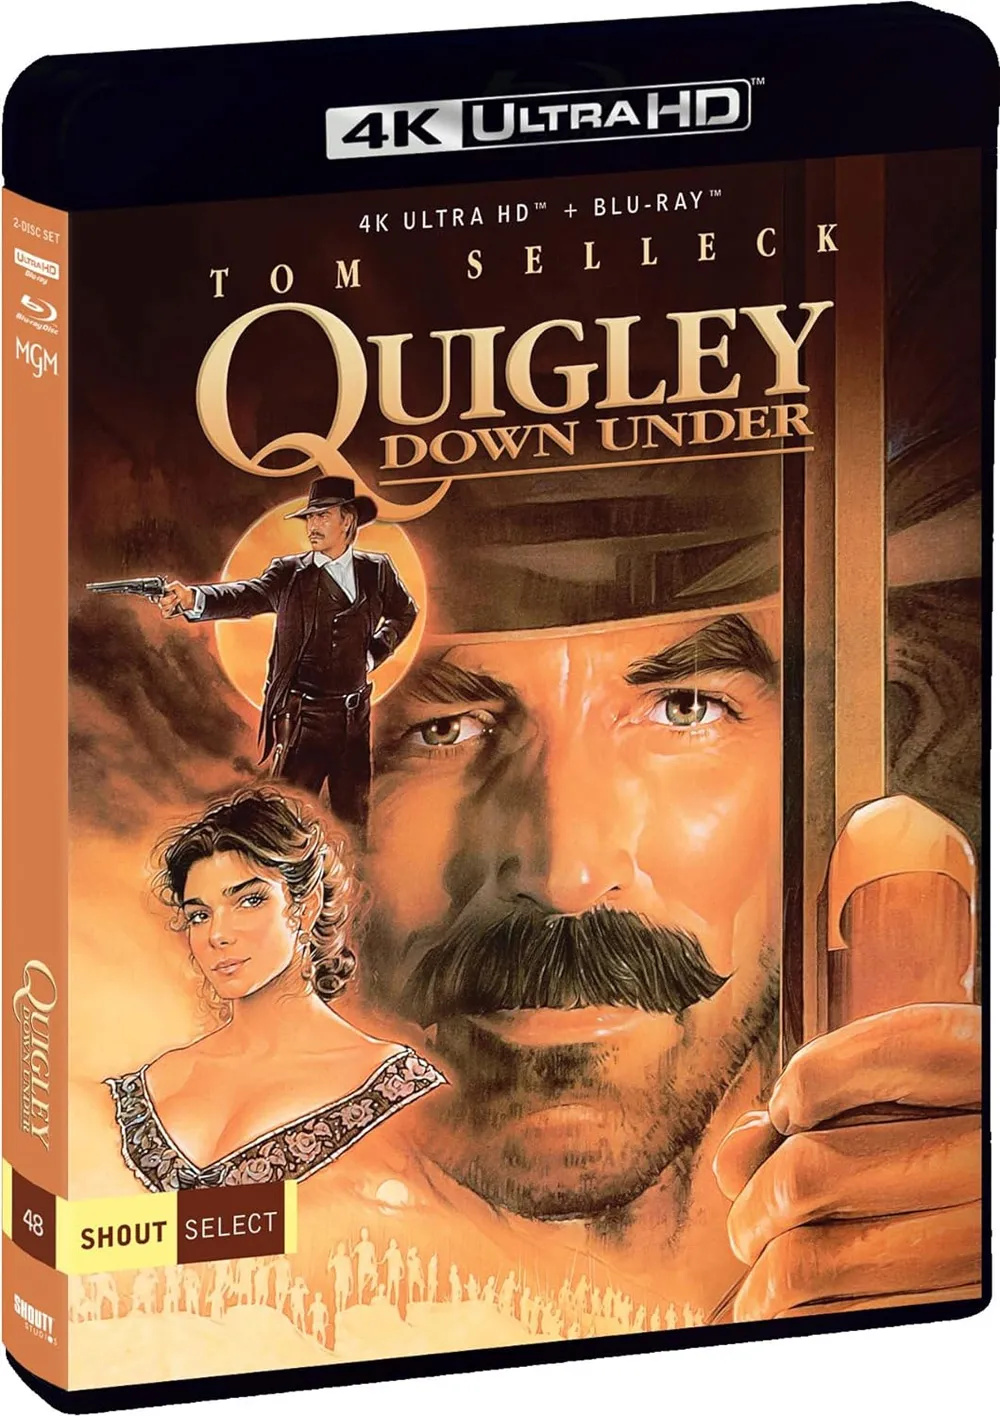 'Quigley Down Under' 4K UHD Blu-ray Bonus Feature Details